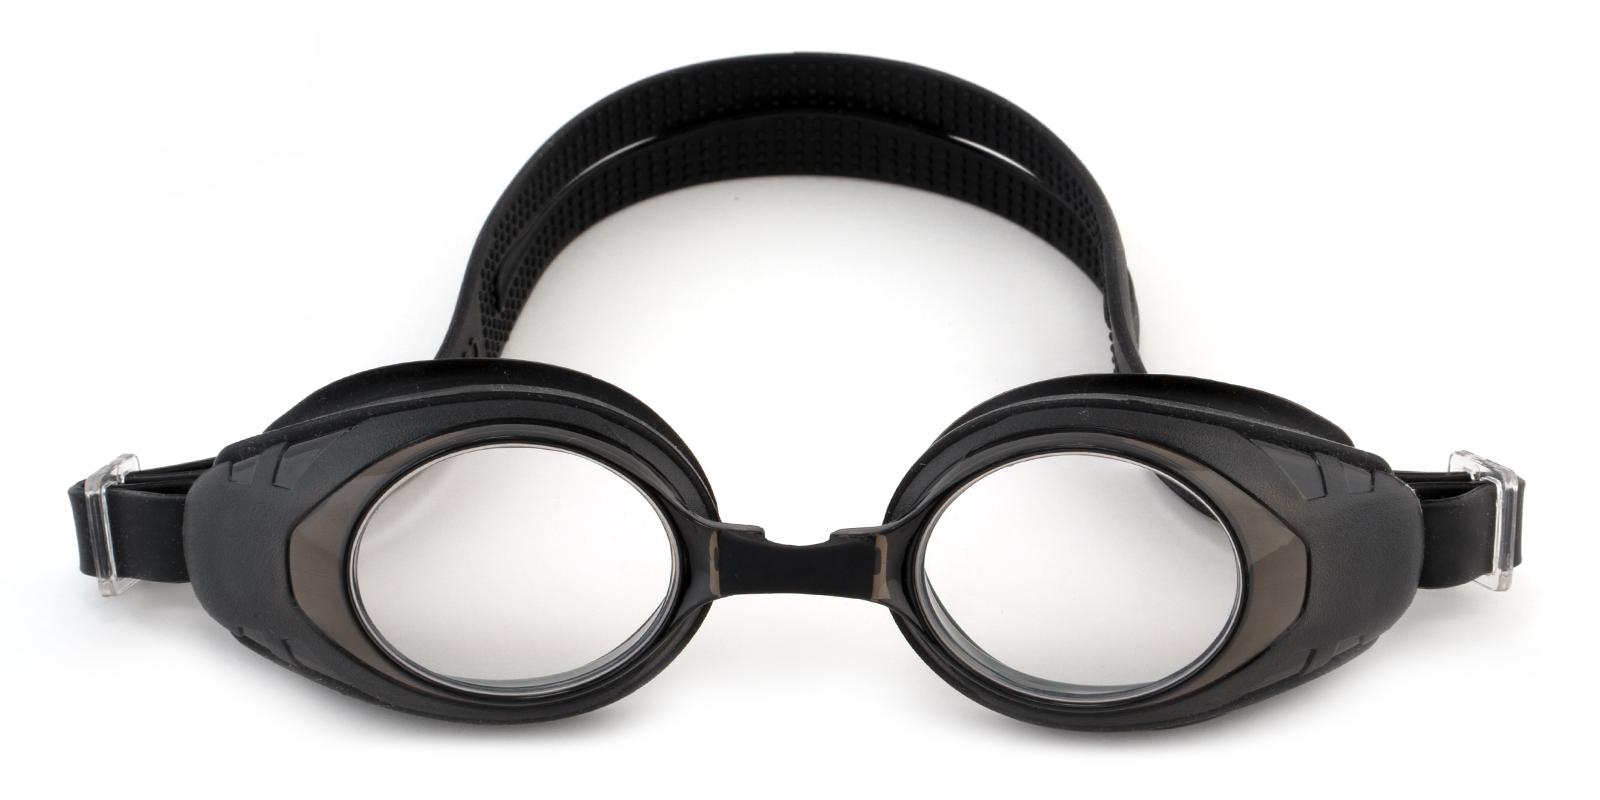 Agate Black Plastic SportsGlasses Frames from ABBE Glasses